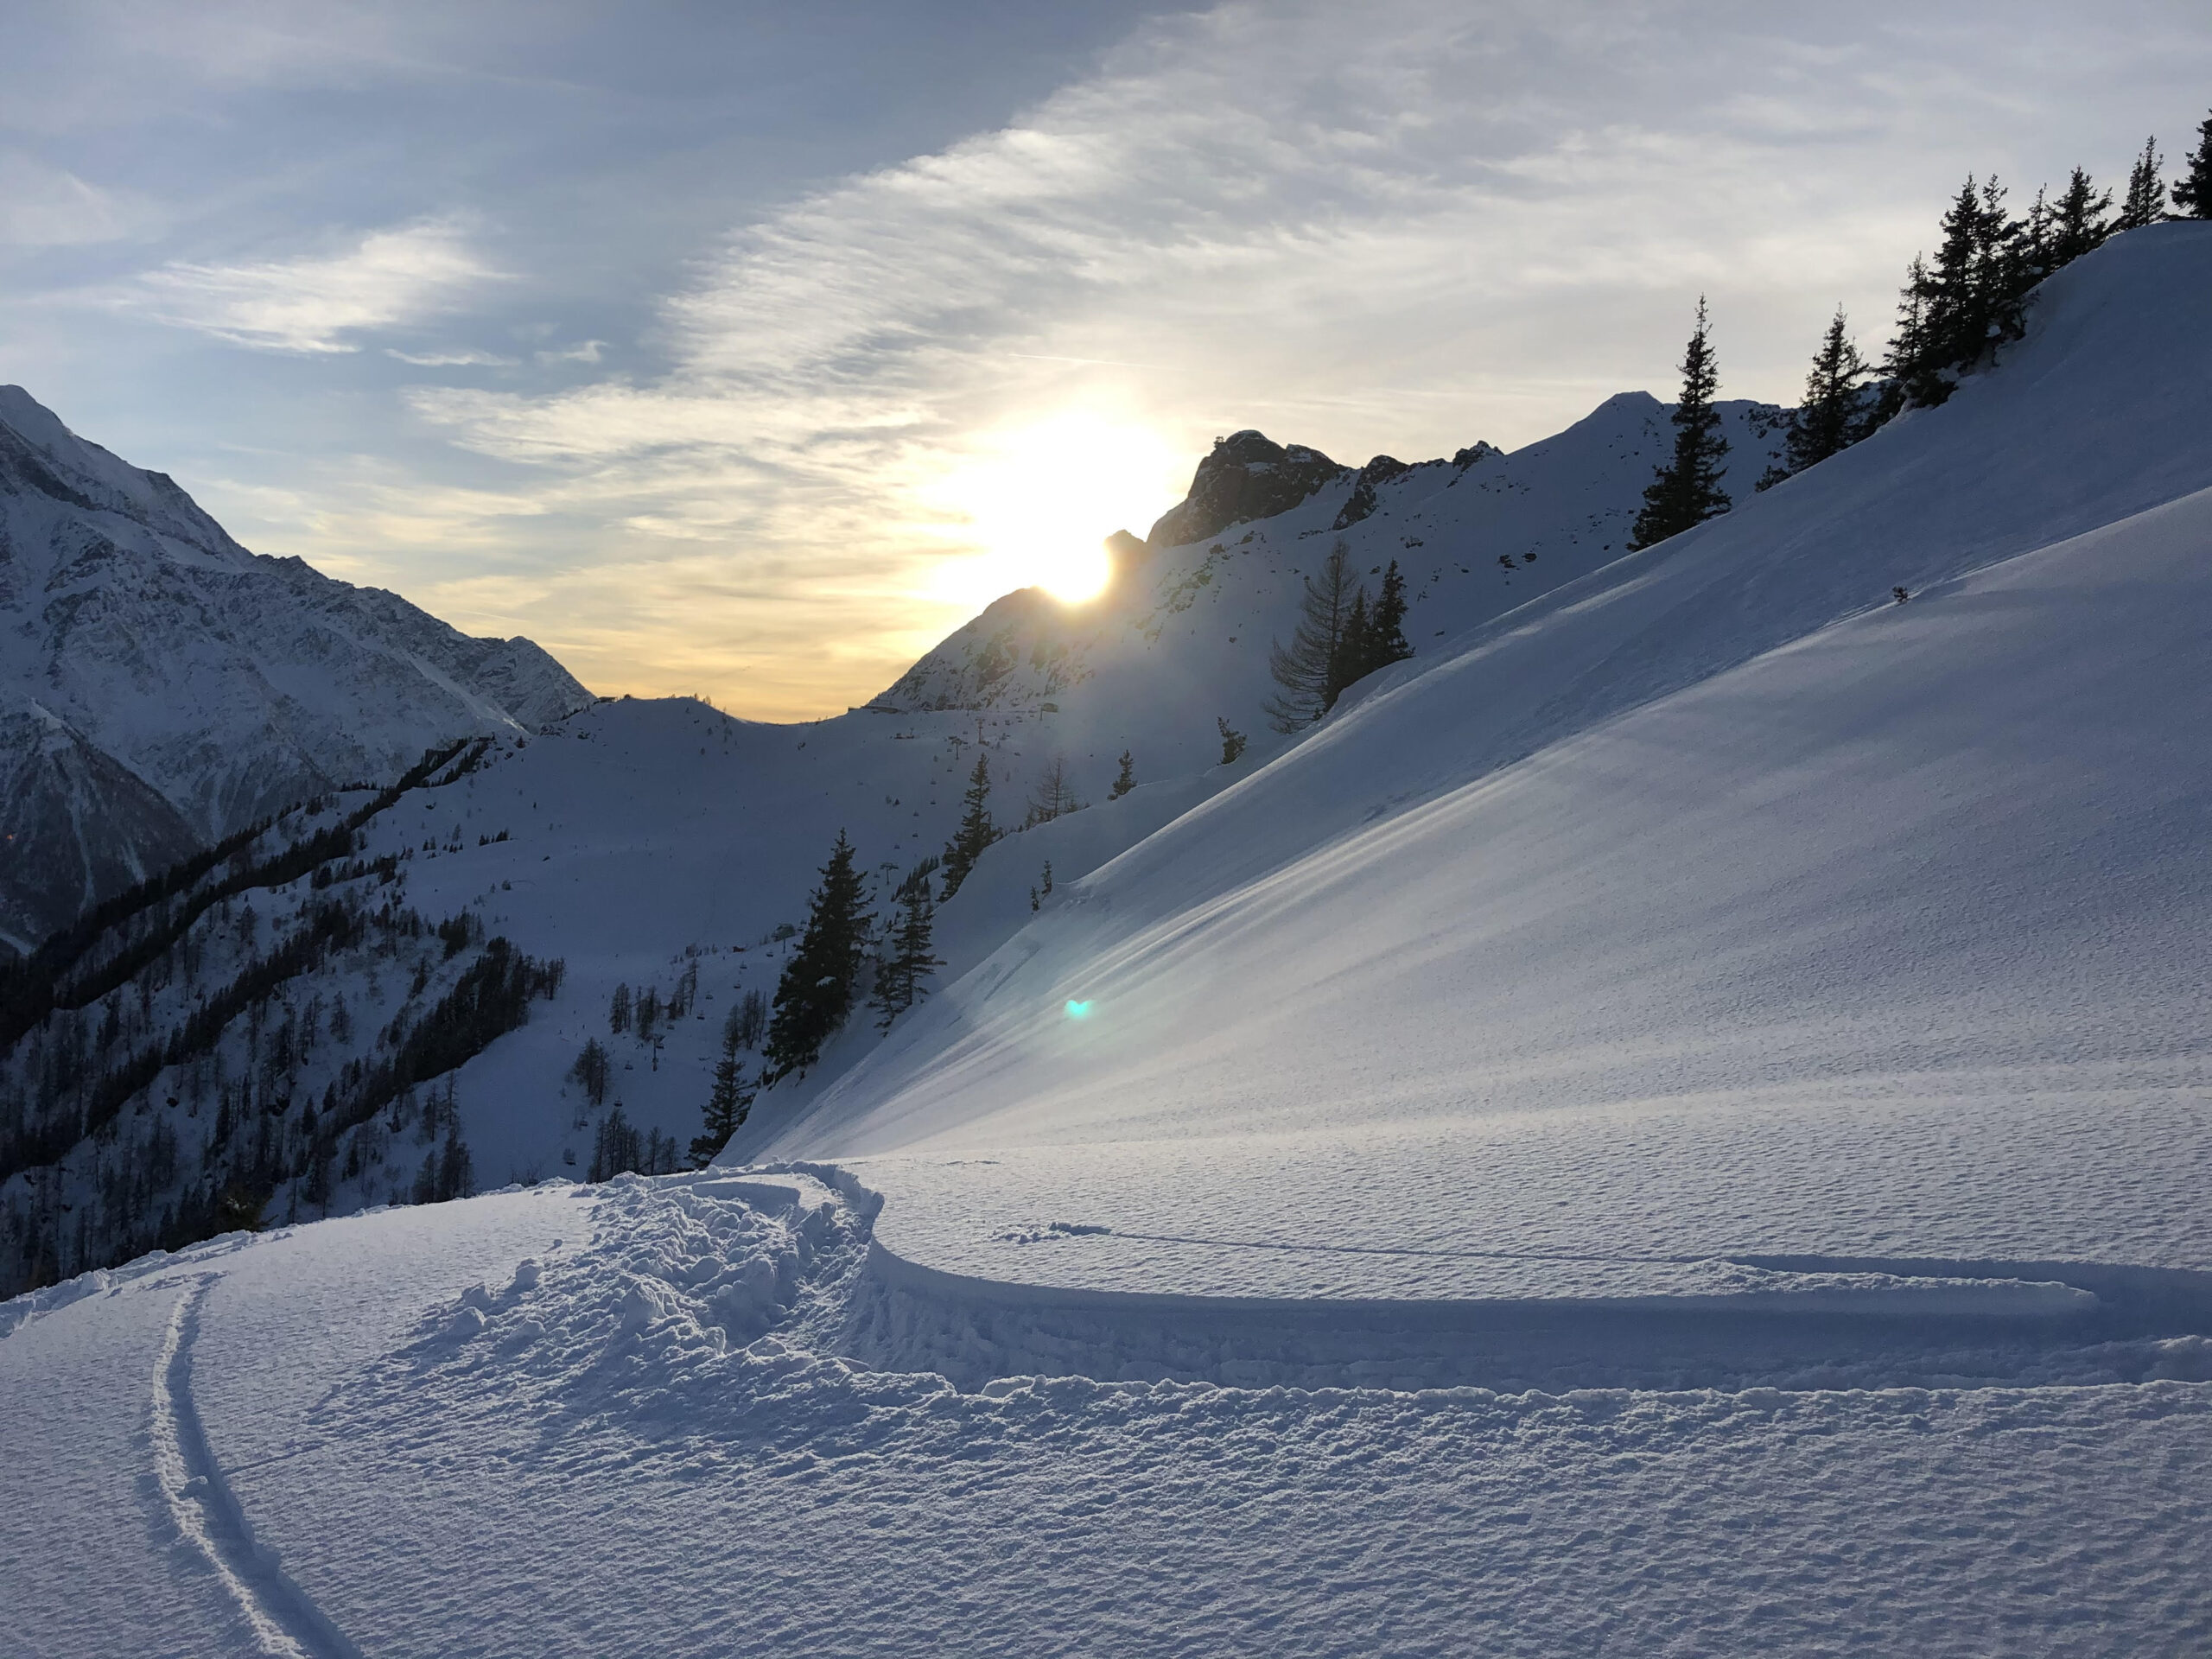 snowy mountain with ski tracks